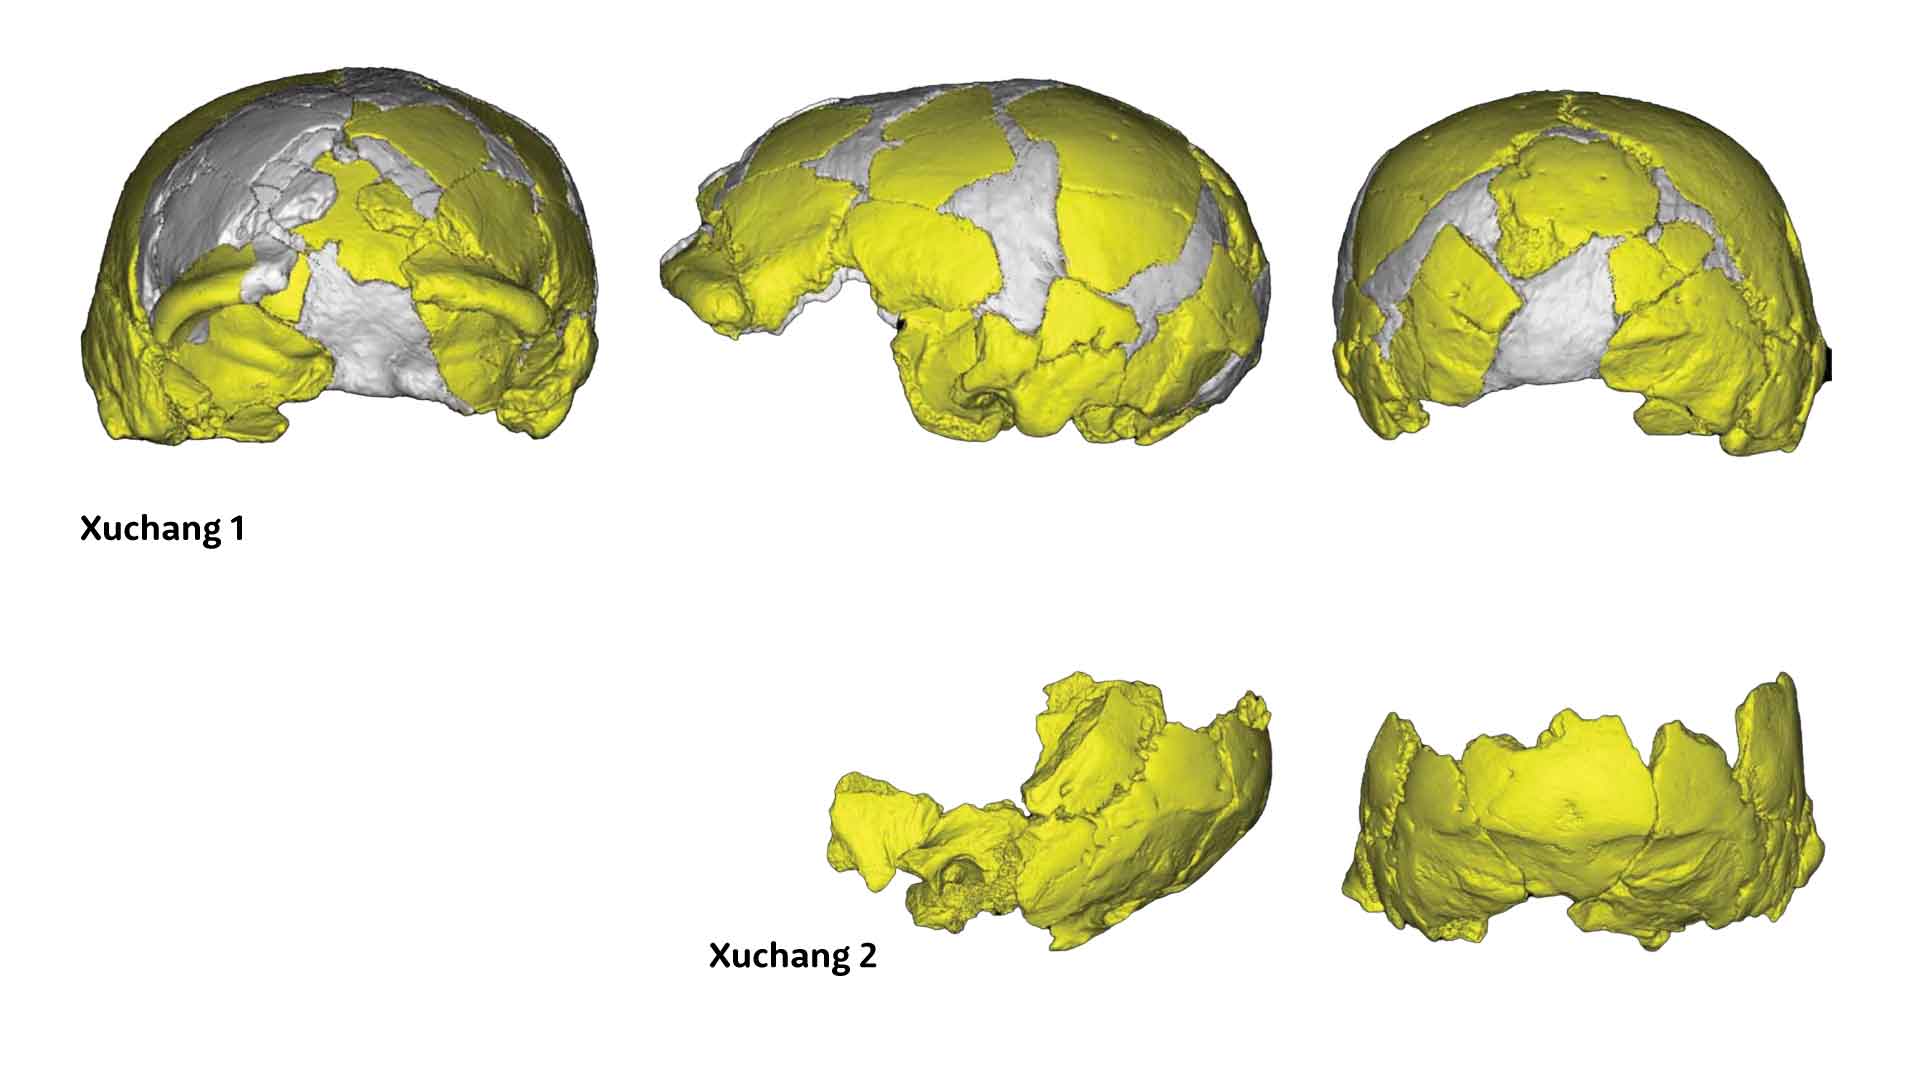 Three views of Xuchang 1 partial skull at top, two views of Xuchang 2 occipital, parietal, and temporal skull portion at bottom